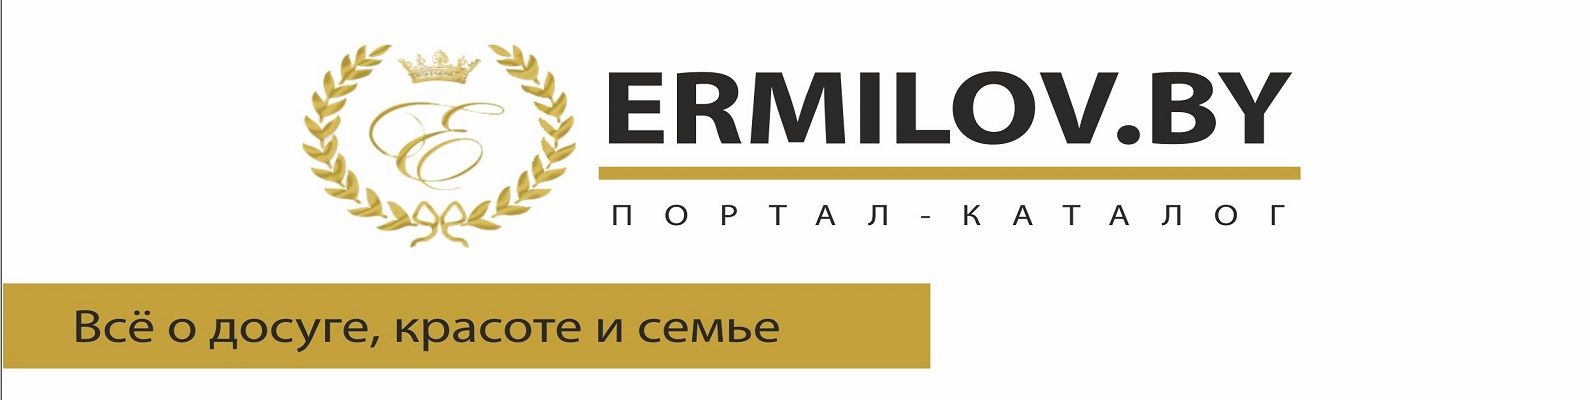 Ермилов